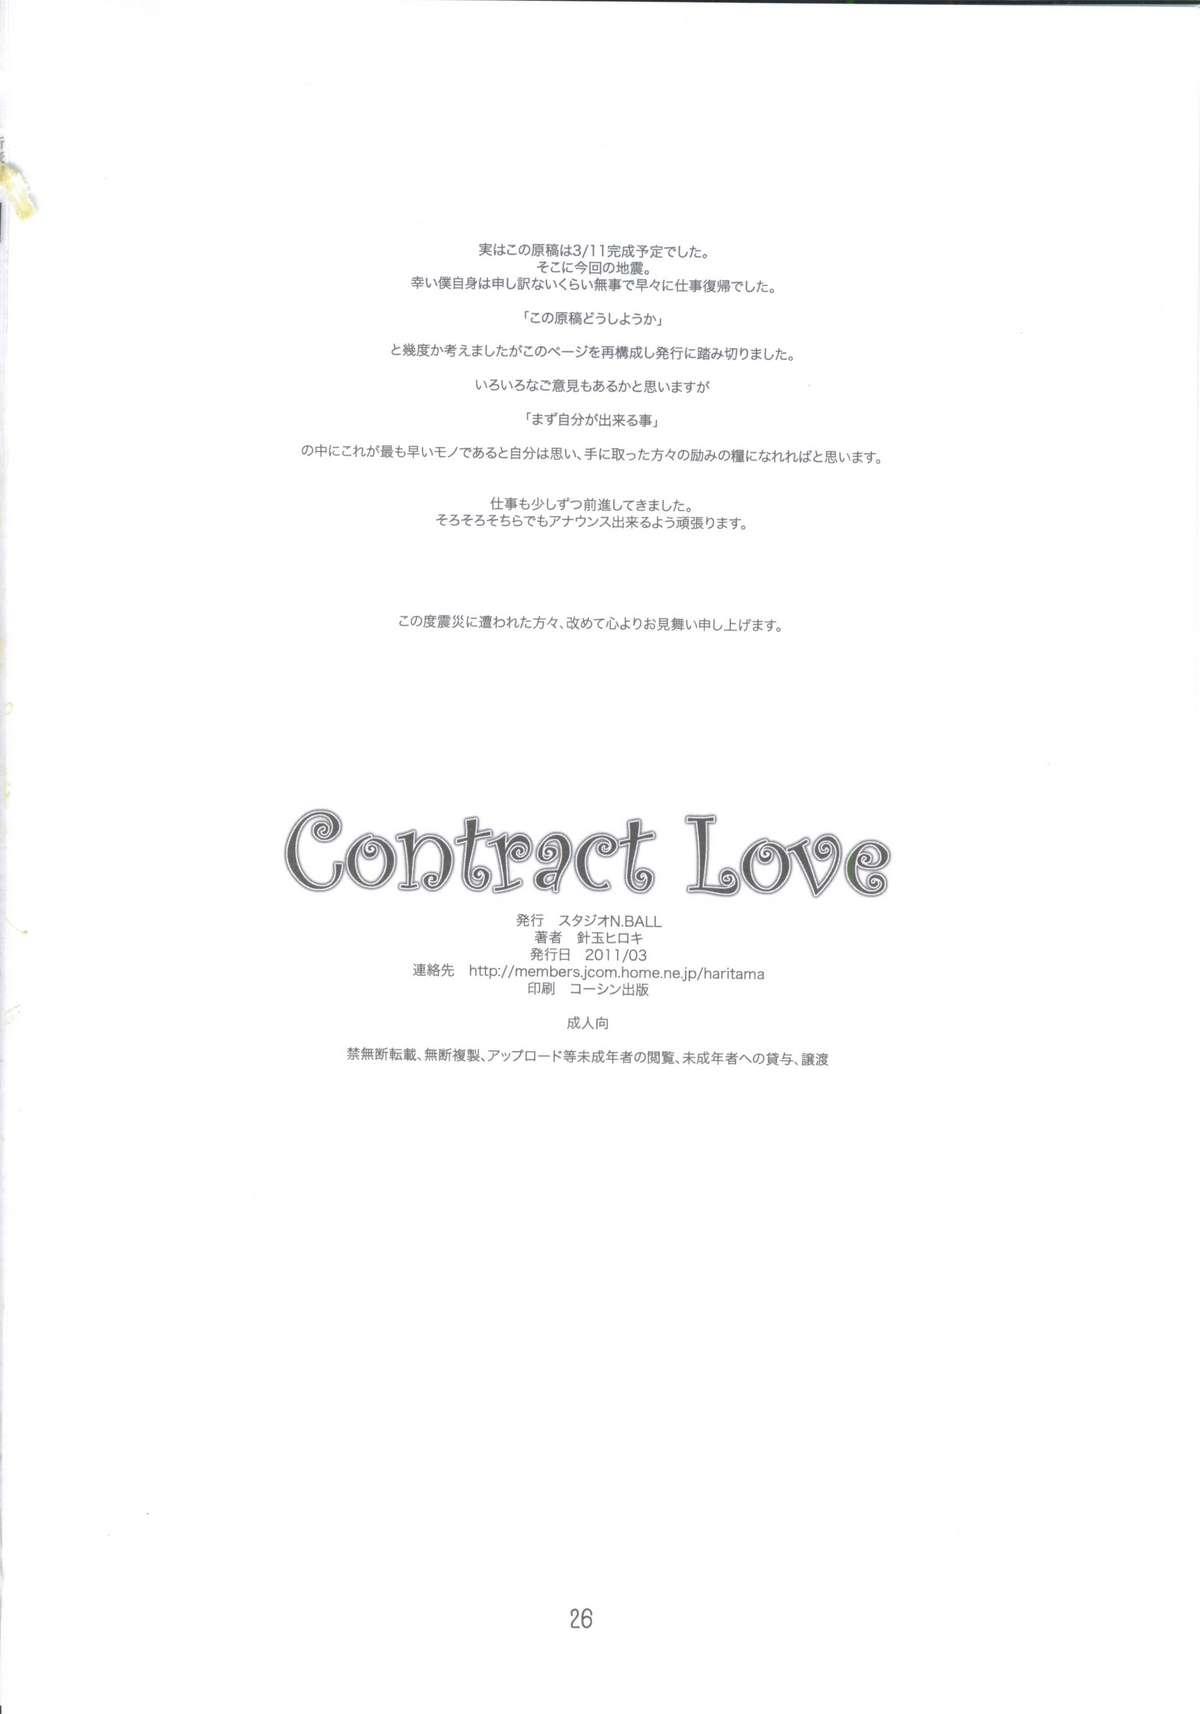 Gay Pov Contract Love - Puella magi madoka magica Milf Cougar - Page 25